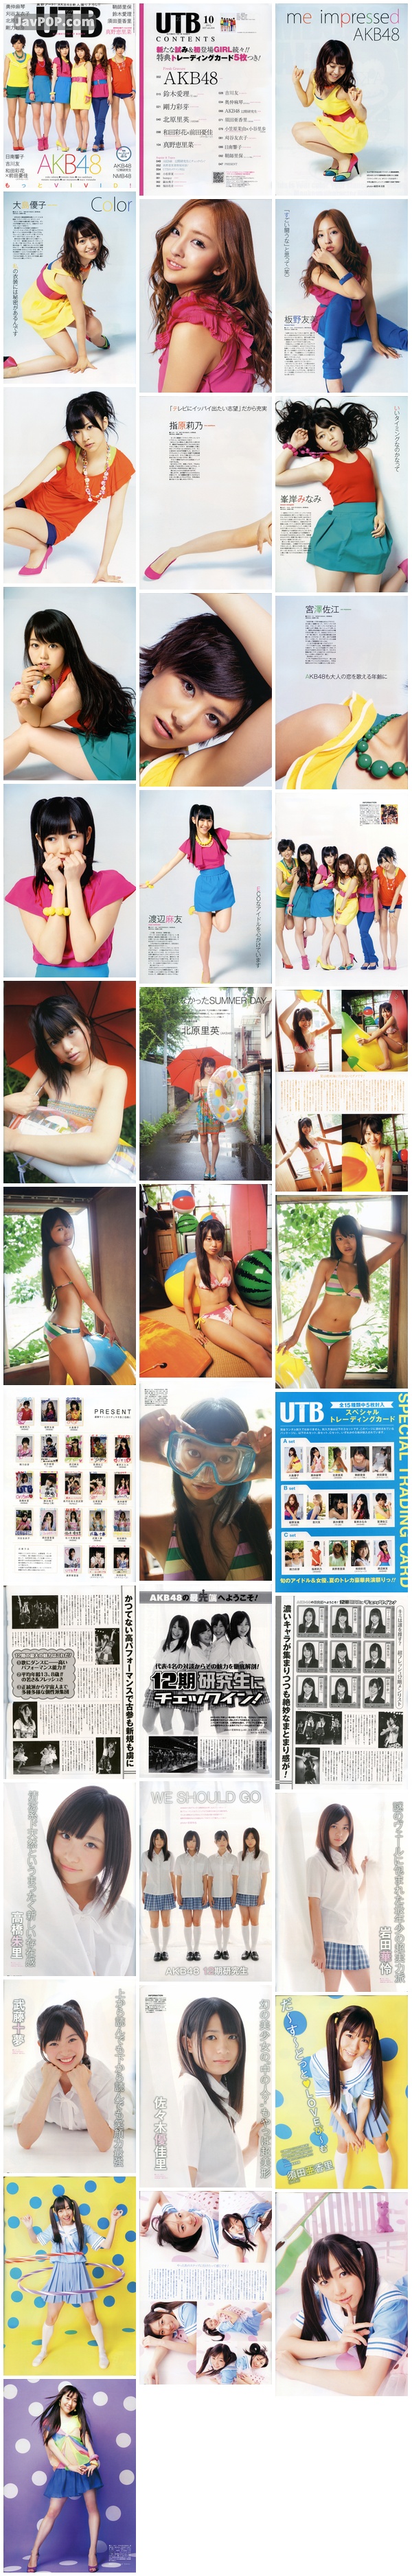 [UTB] 2011 Vol.204 AKB48 北原里英 AKB4812期研究生 須田亞香里